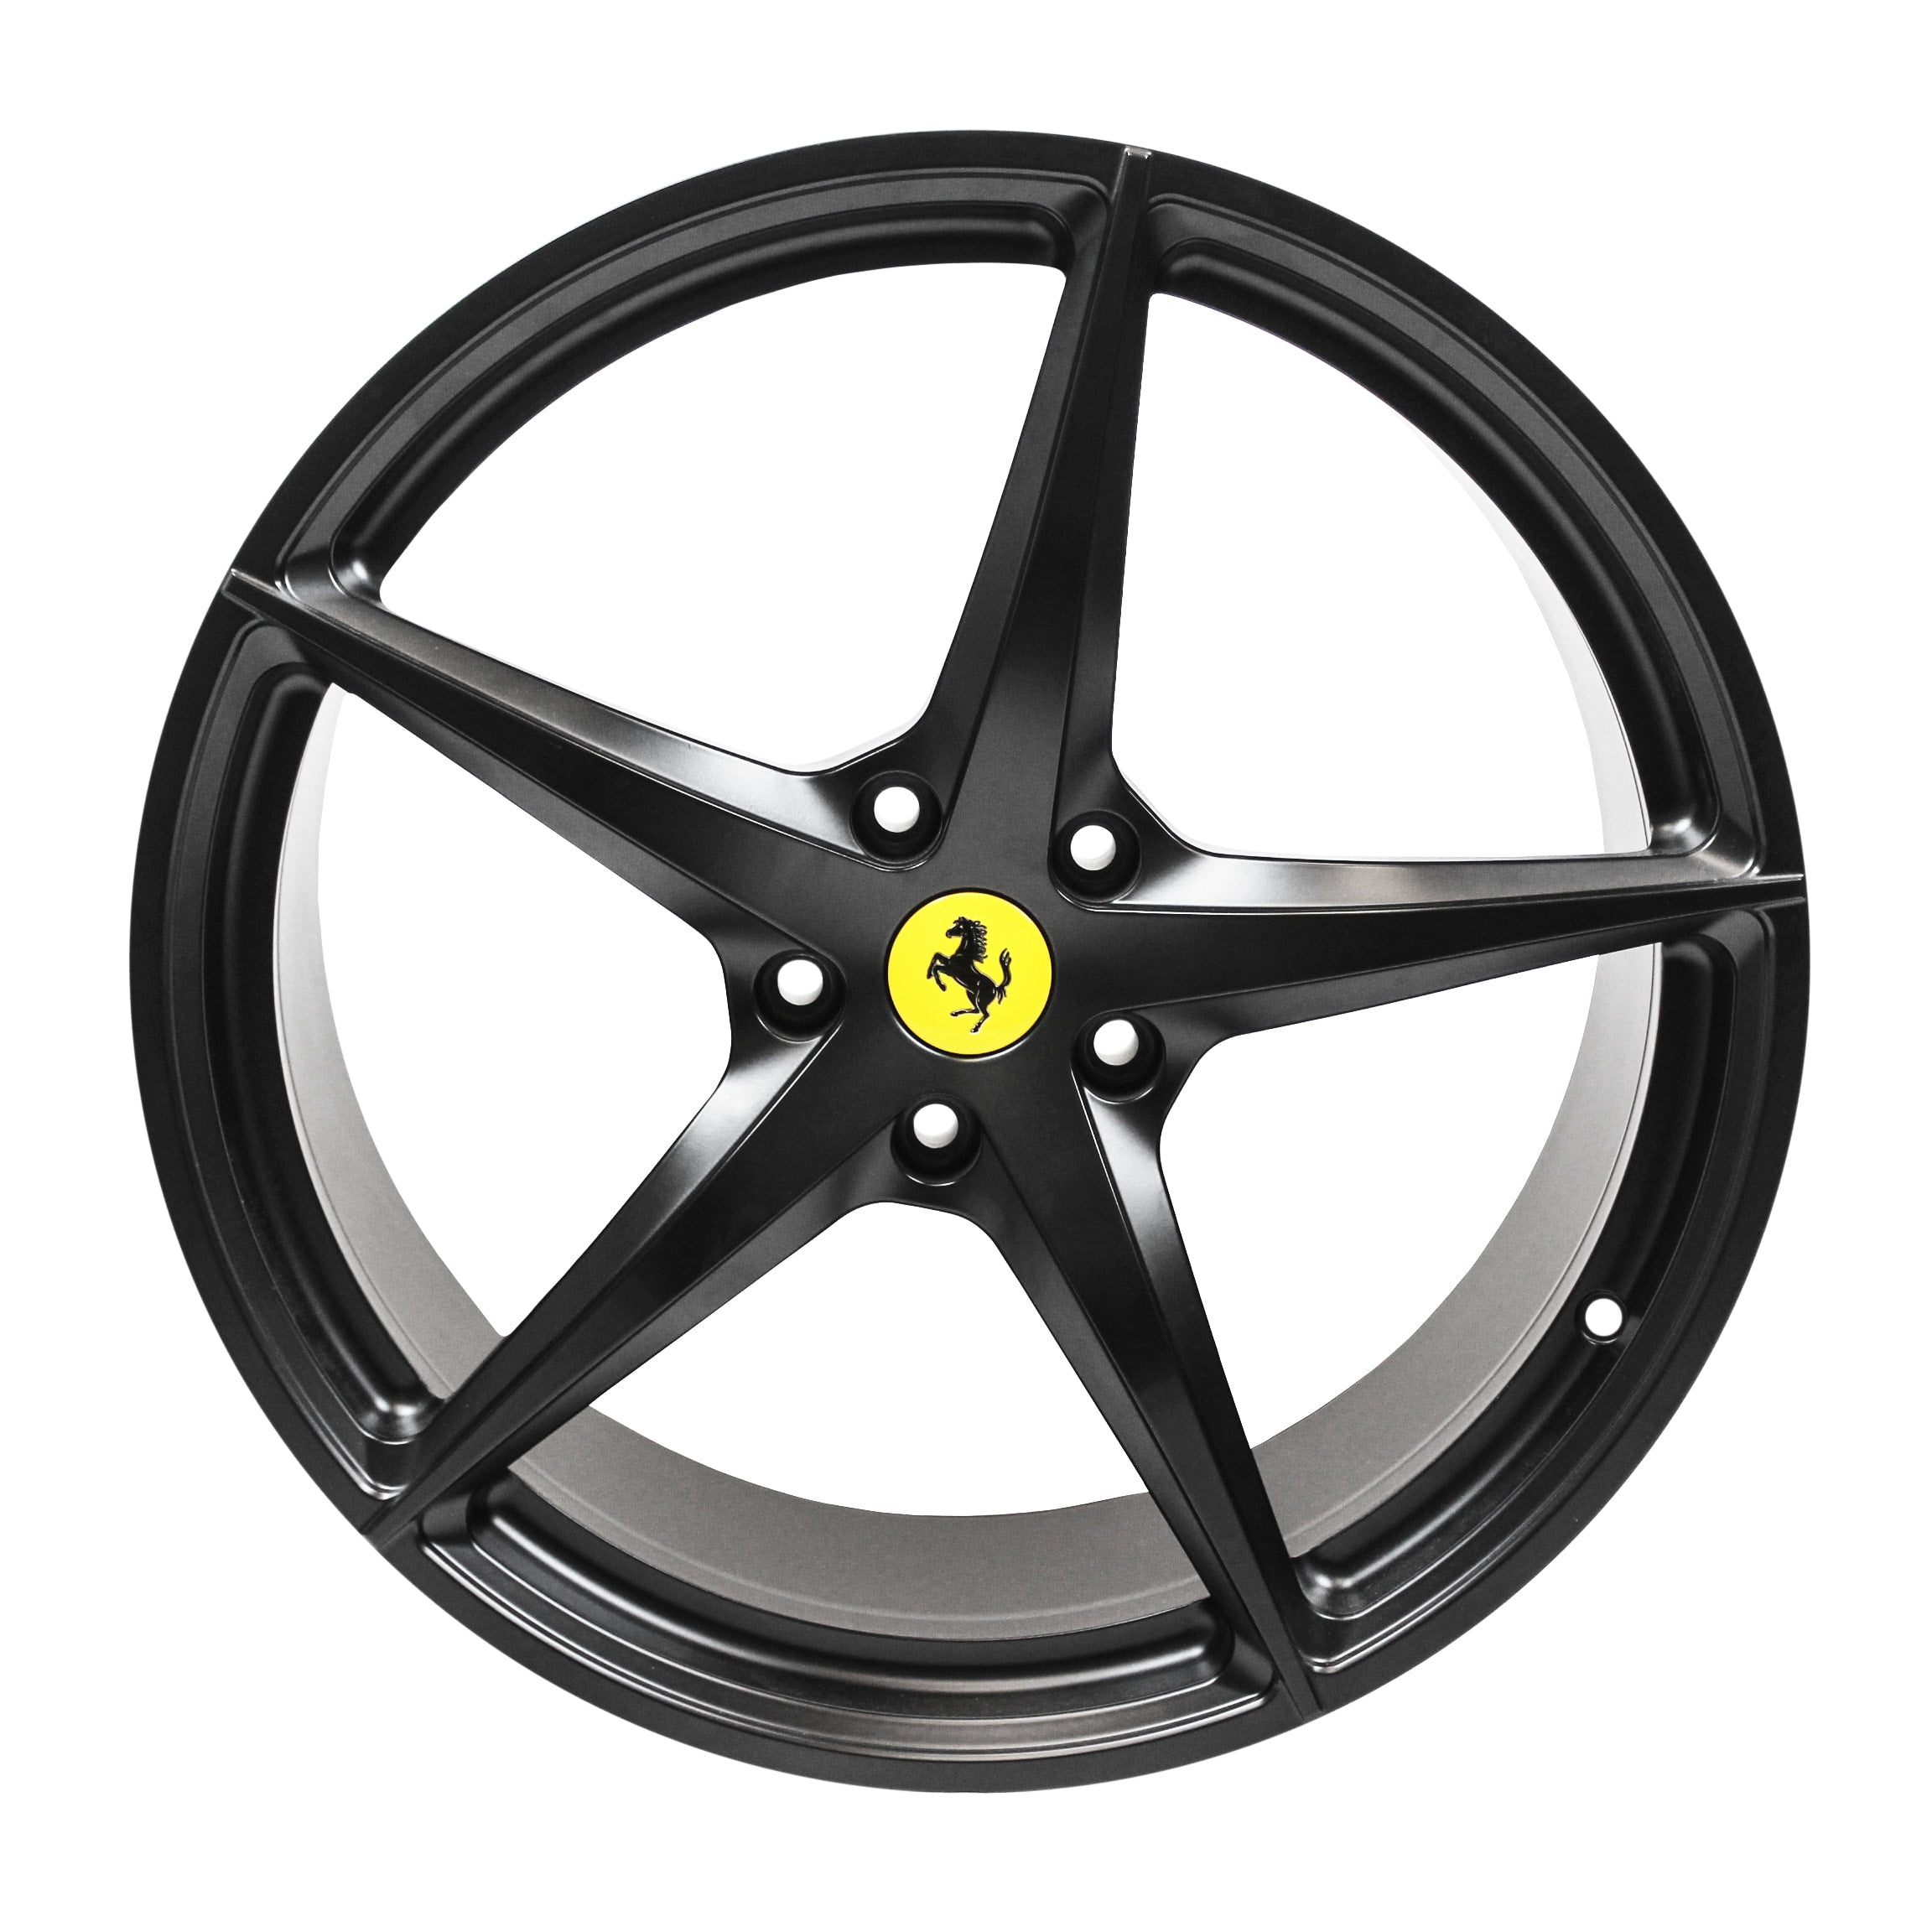 Ferrari F12 Front and Rear Wheel Set 2014 - Present